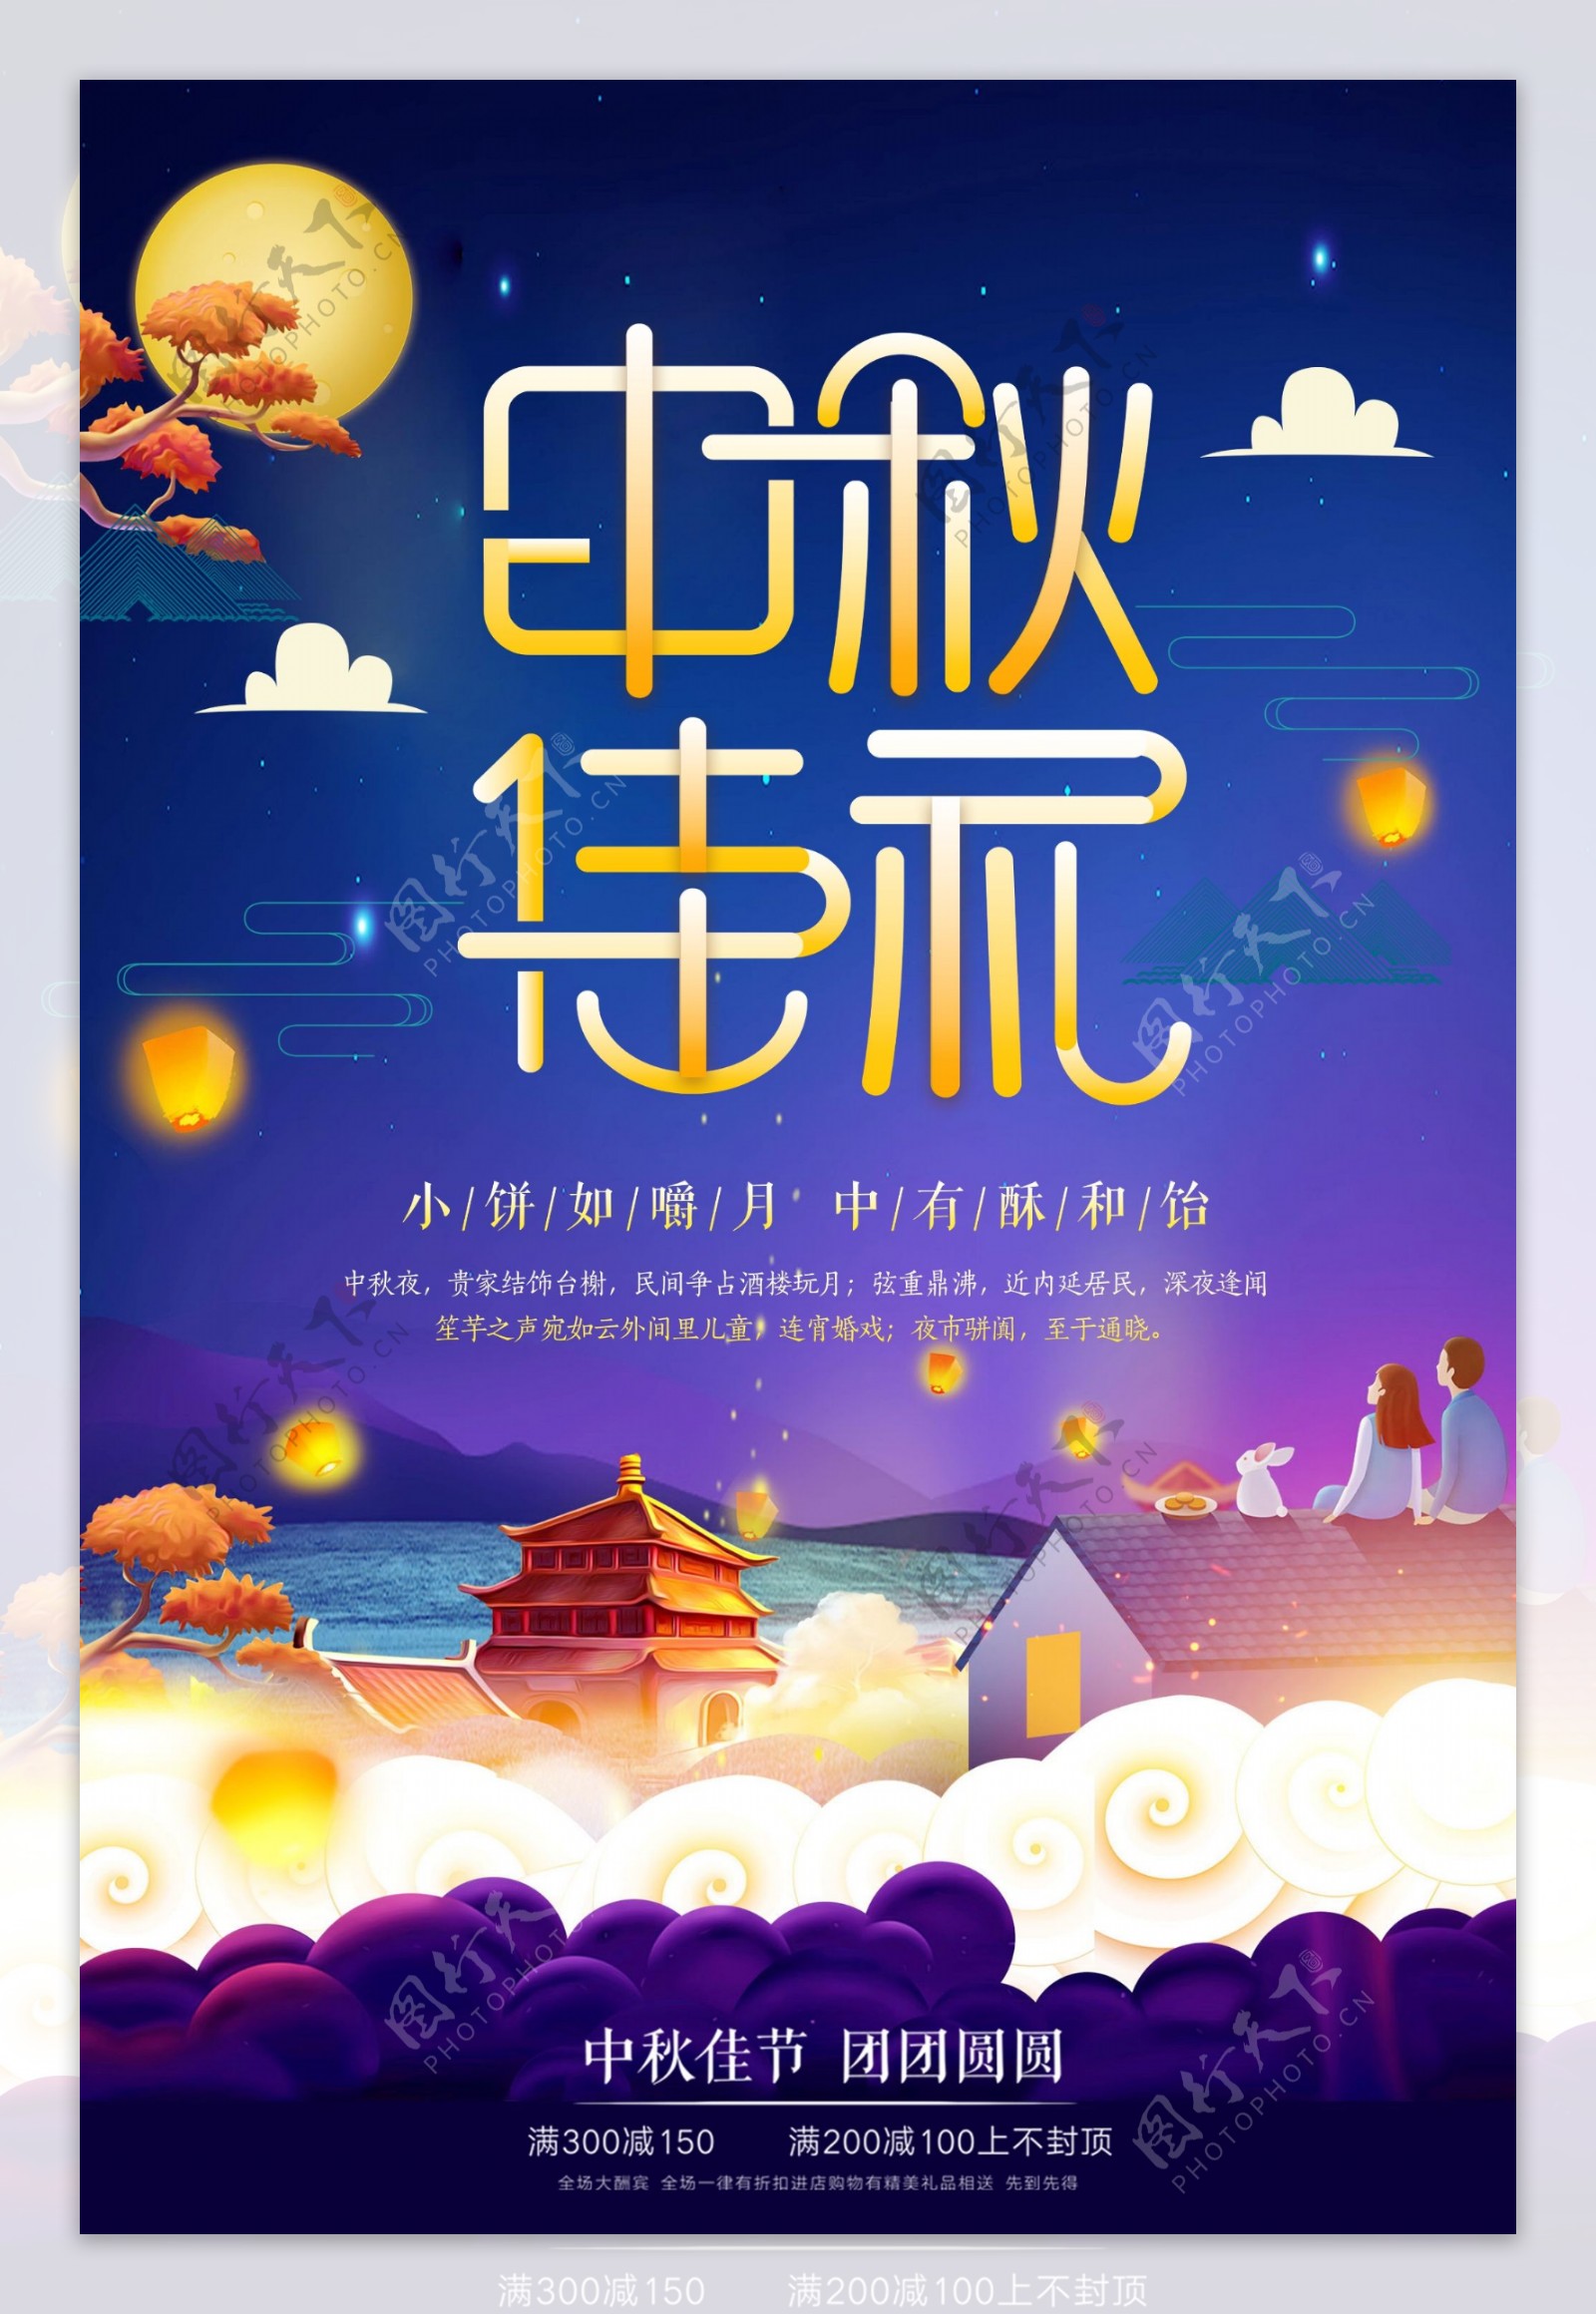 2018中秋佳节月圆节日促销海报